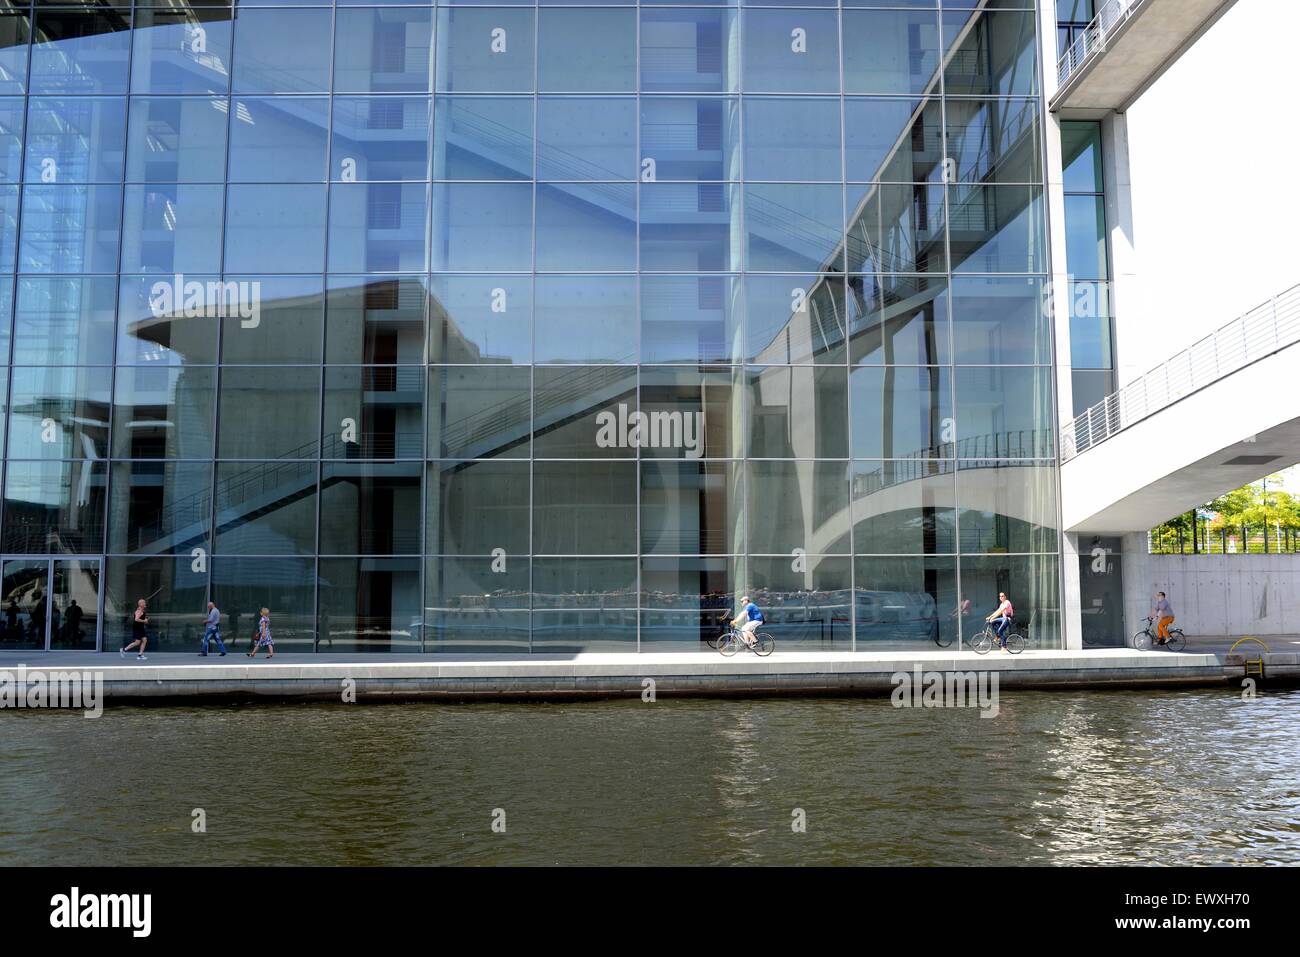 Moderne Regierungsgebäude mit Glasfassade in Berlin, Deutschland, mit Reflektion, Radfahrer und Fluss. Stockfoto